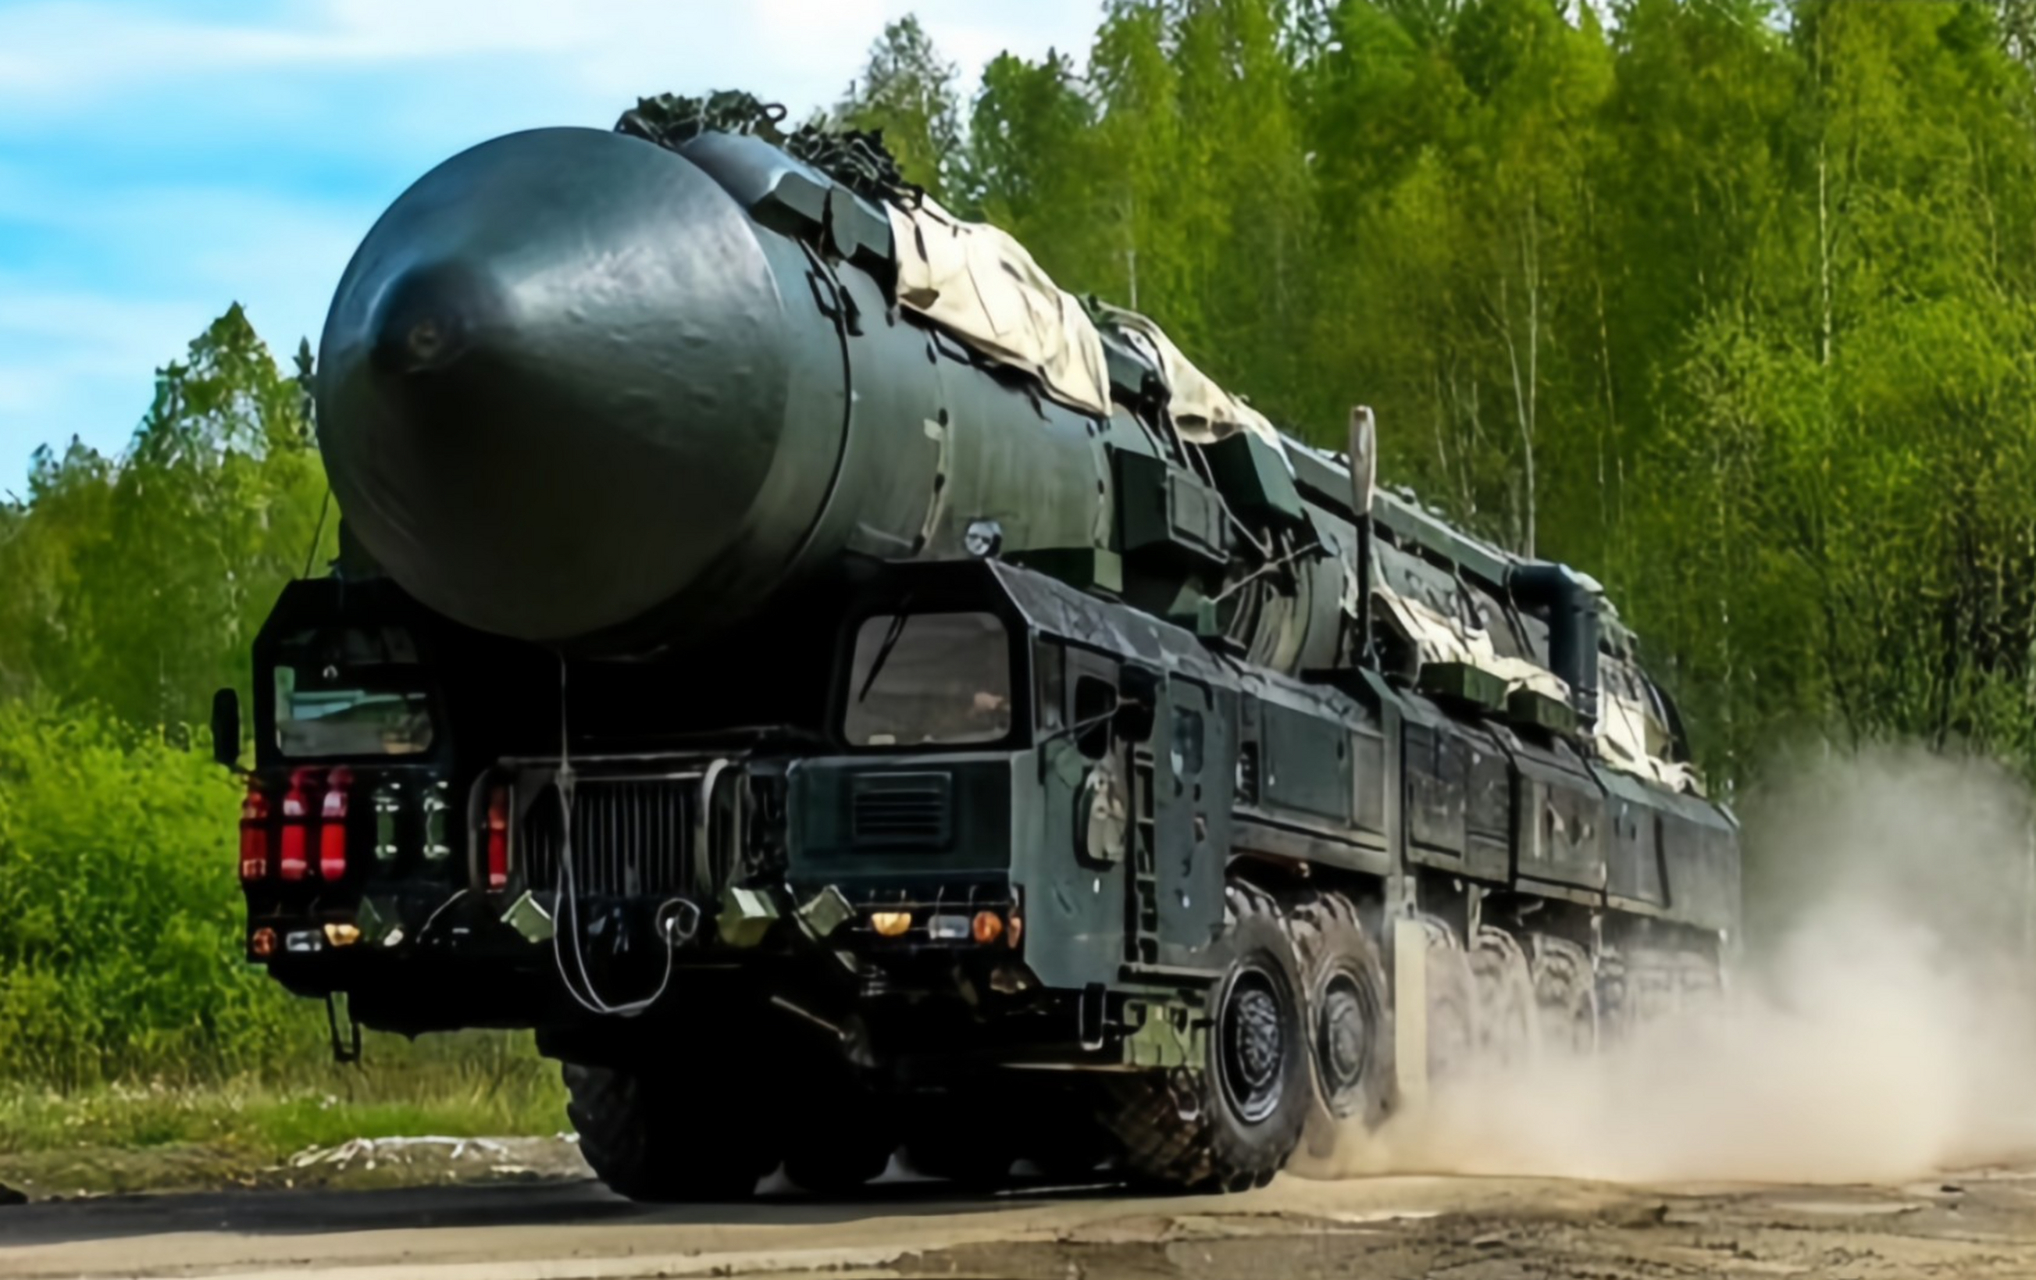 俄罗斯国防部宣布,俄战略导弹部队在卡普斯京亚尔试验场进行了一次